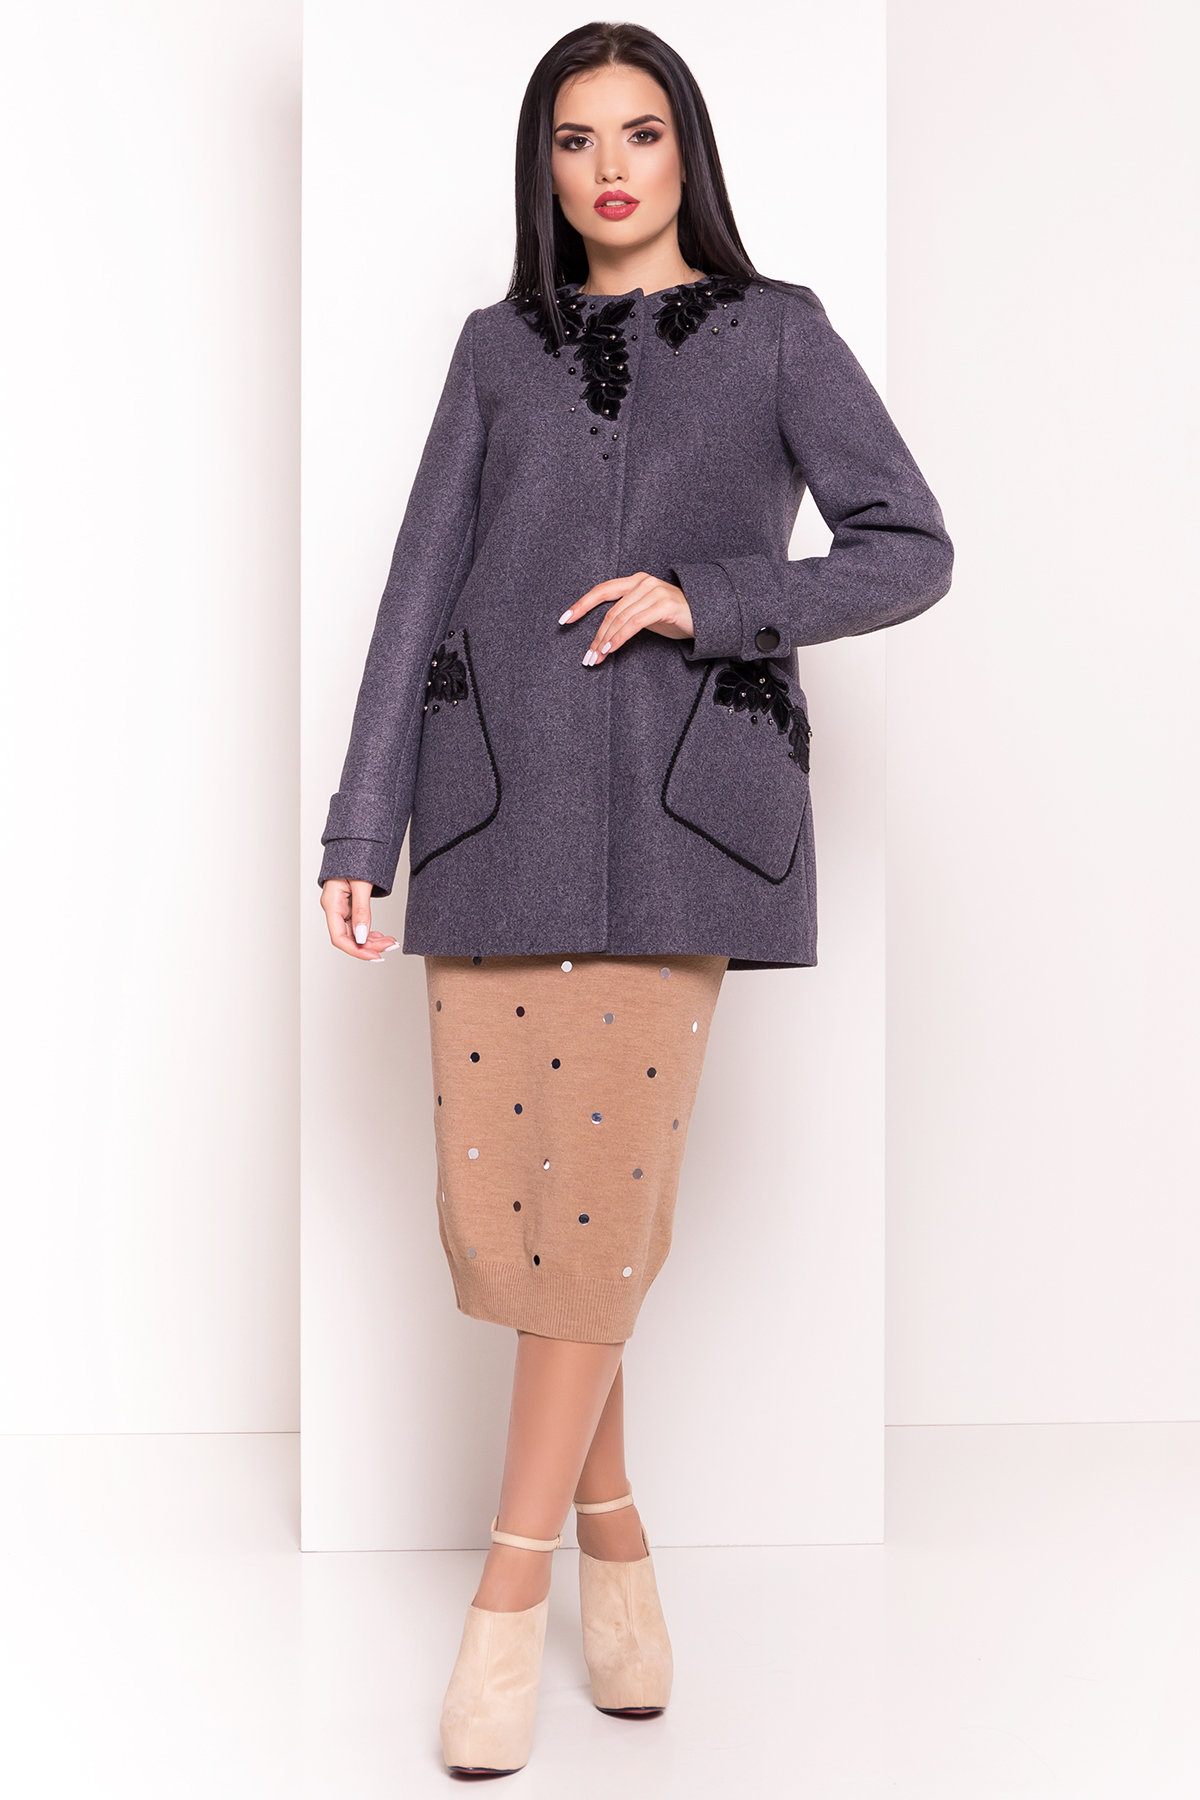 Женские пальто в интернет магазине TM Modus Укороченное пальто-трапеция с вышивкой Латта 5526